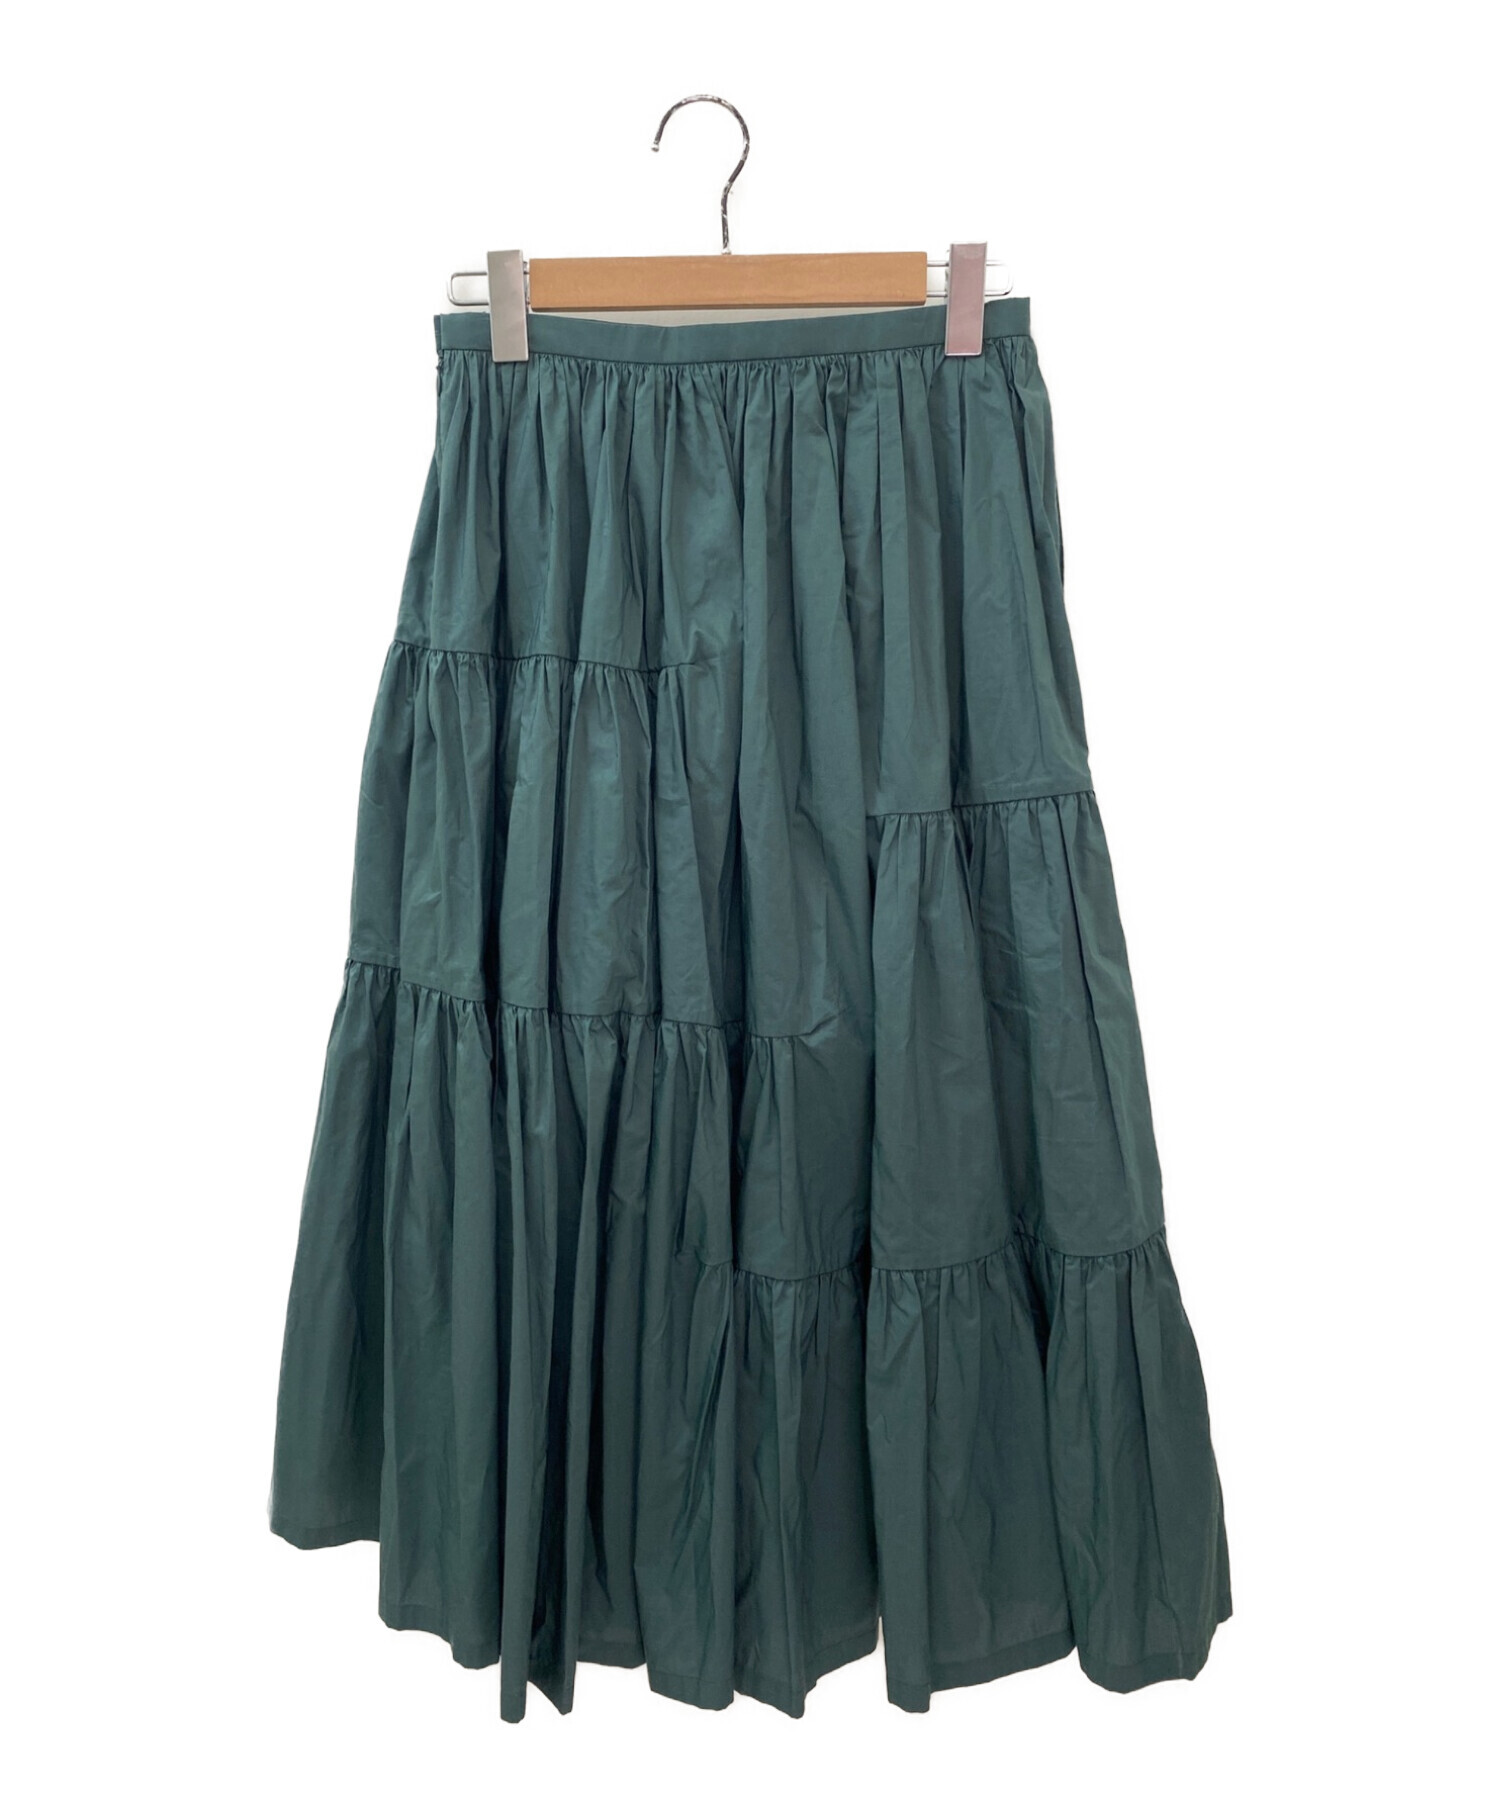 ミナ ペルホネン スカート サイズ 38